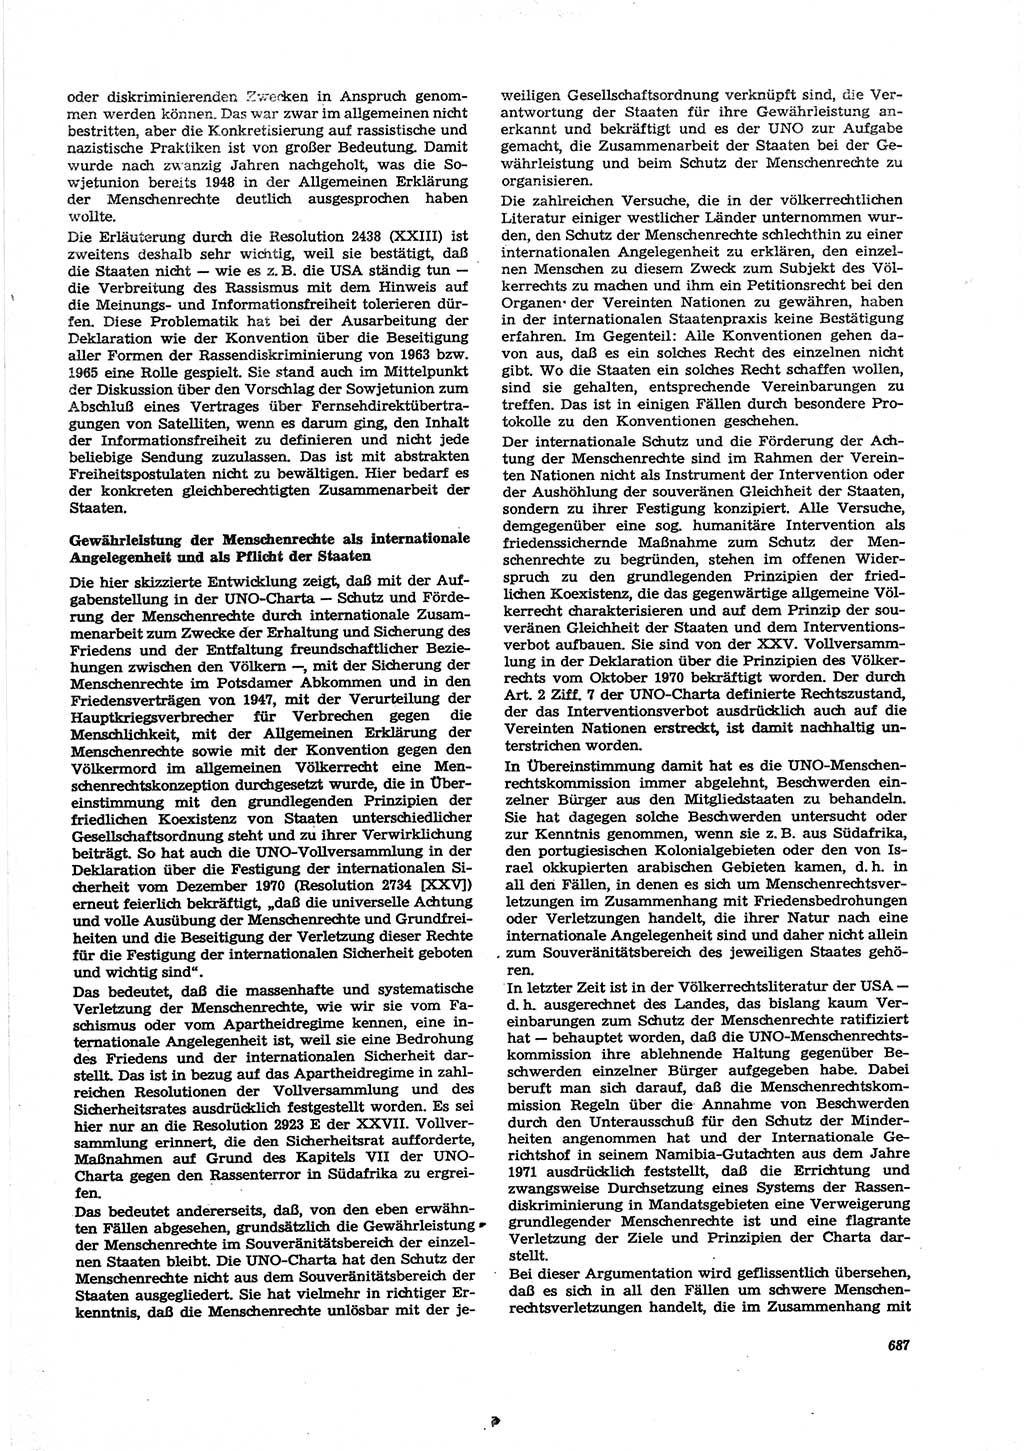 Neue Justiz (NJ), Zeitschrift für Recht und Rechtswissenschaft [Deutsche Demokratische Republik (DDR)], 27. Jahrgang 1973, Seite 687 (NJ DDR 1973, S. 687)